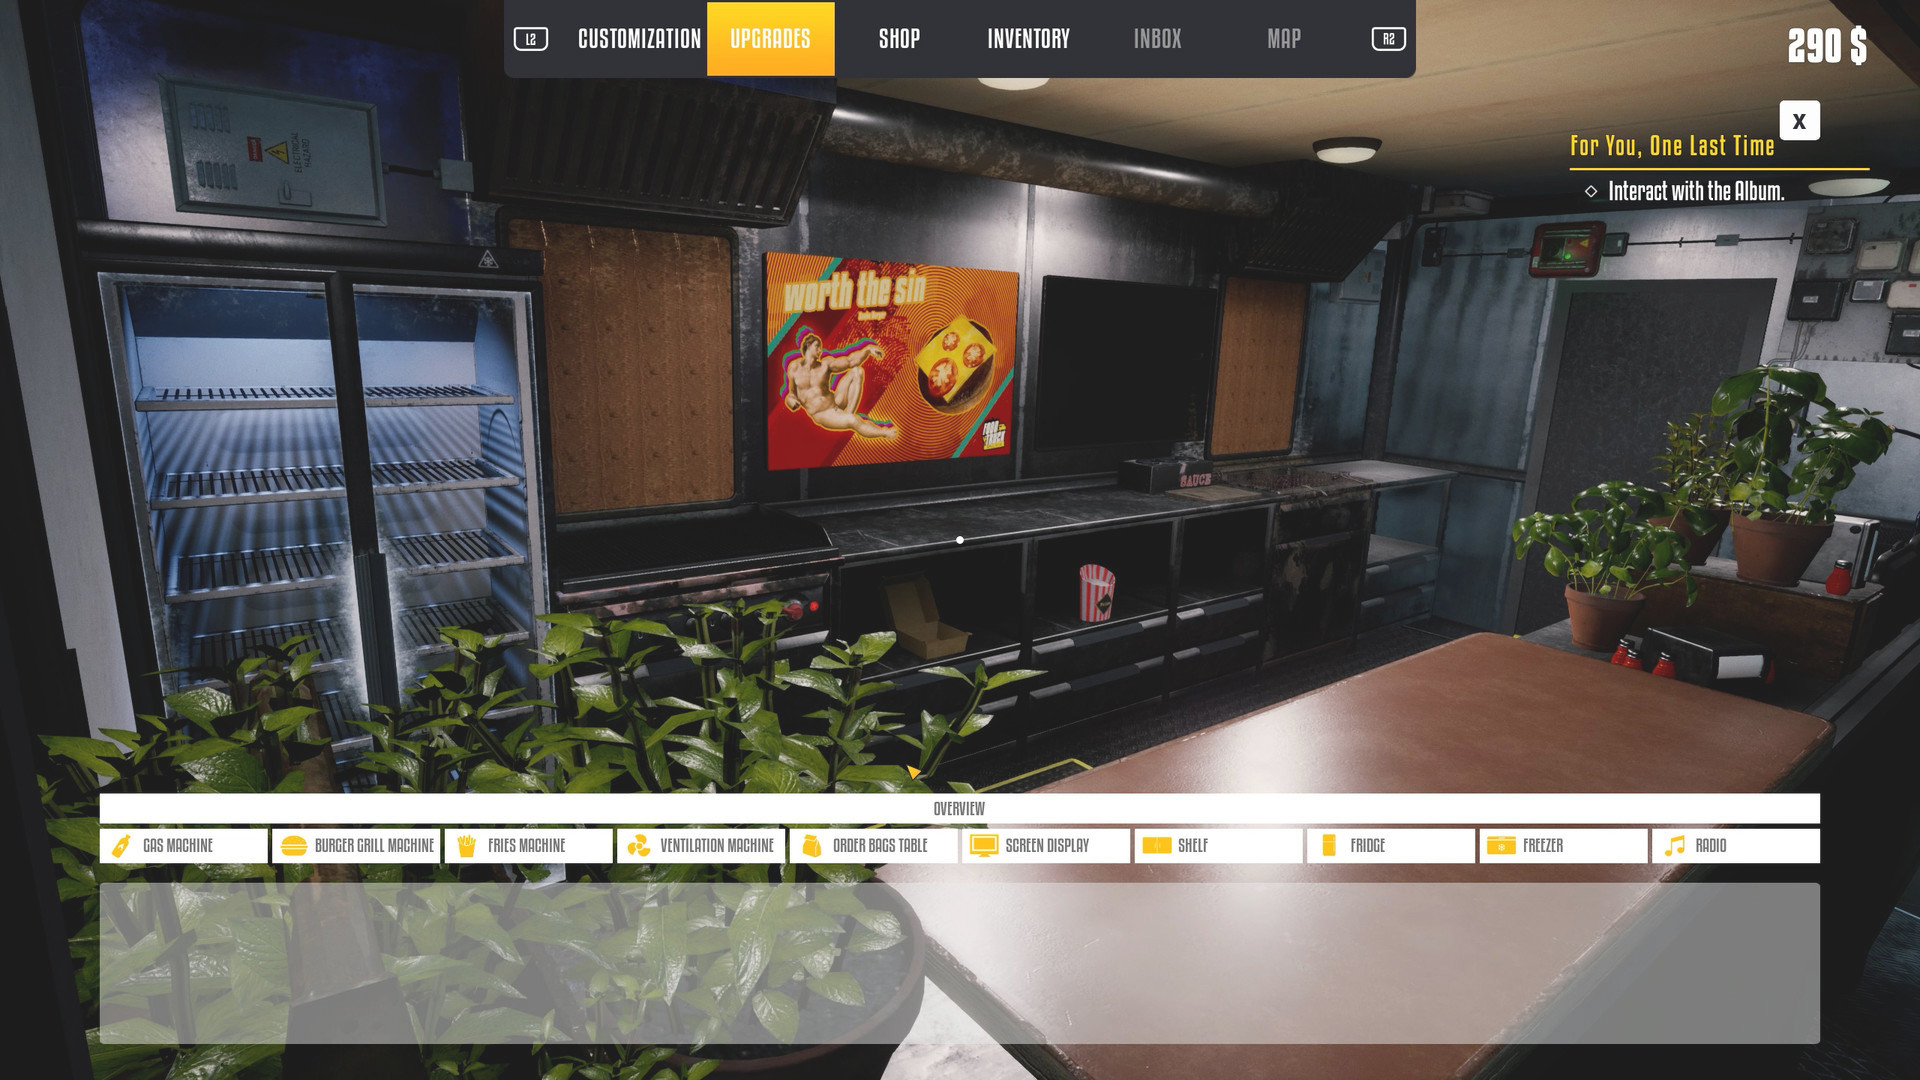 Review Food Truck Simulator (PC) - No lugar certo, na hora certa